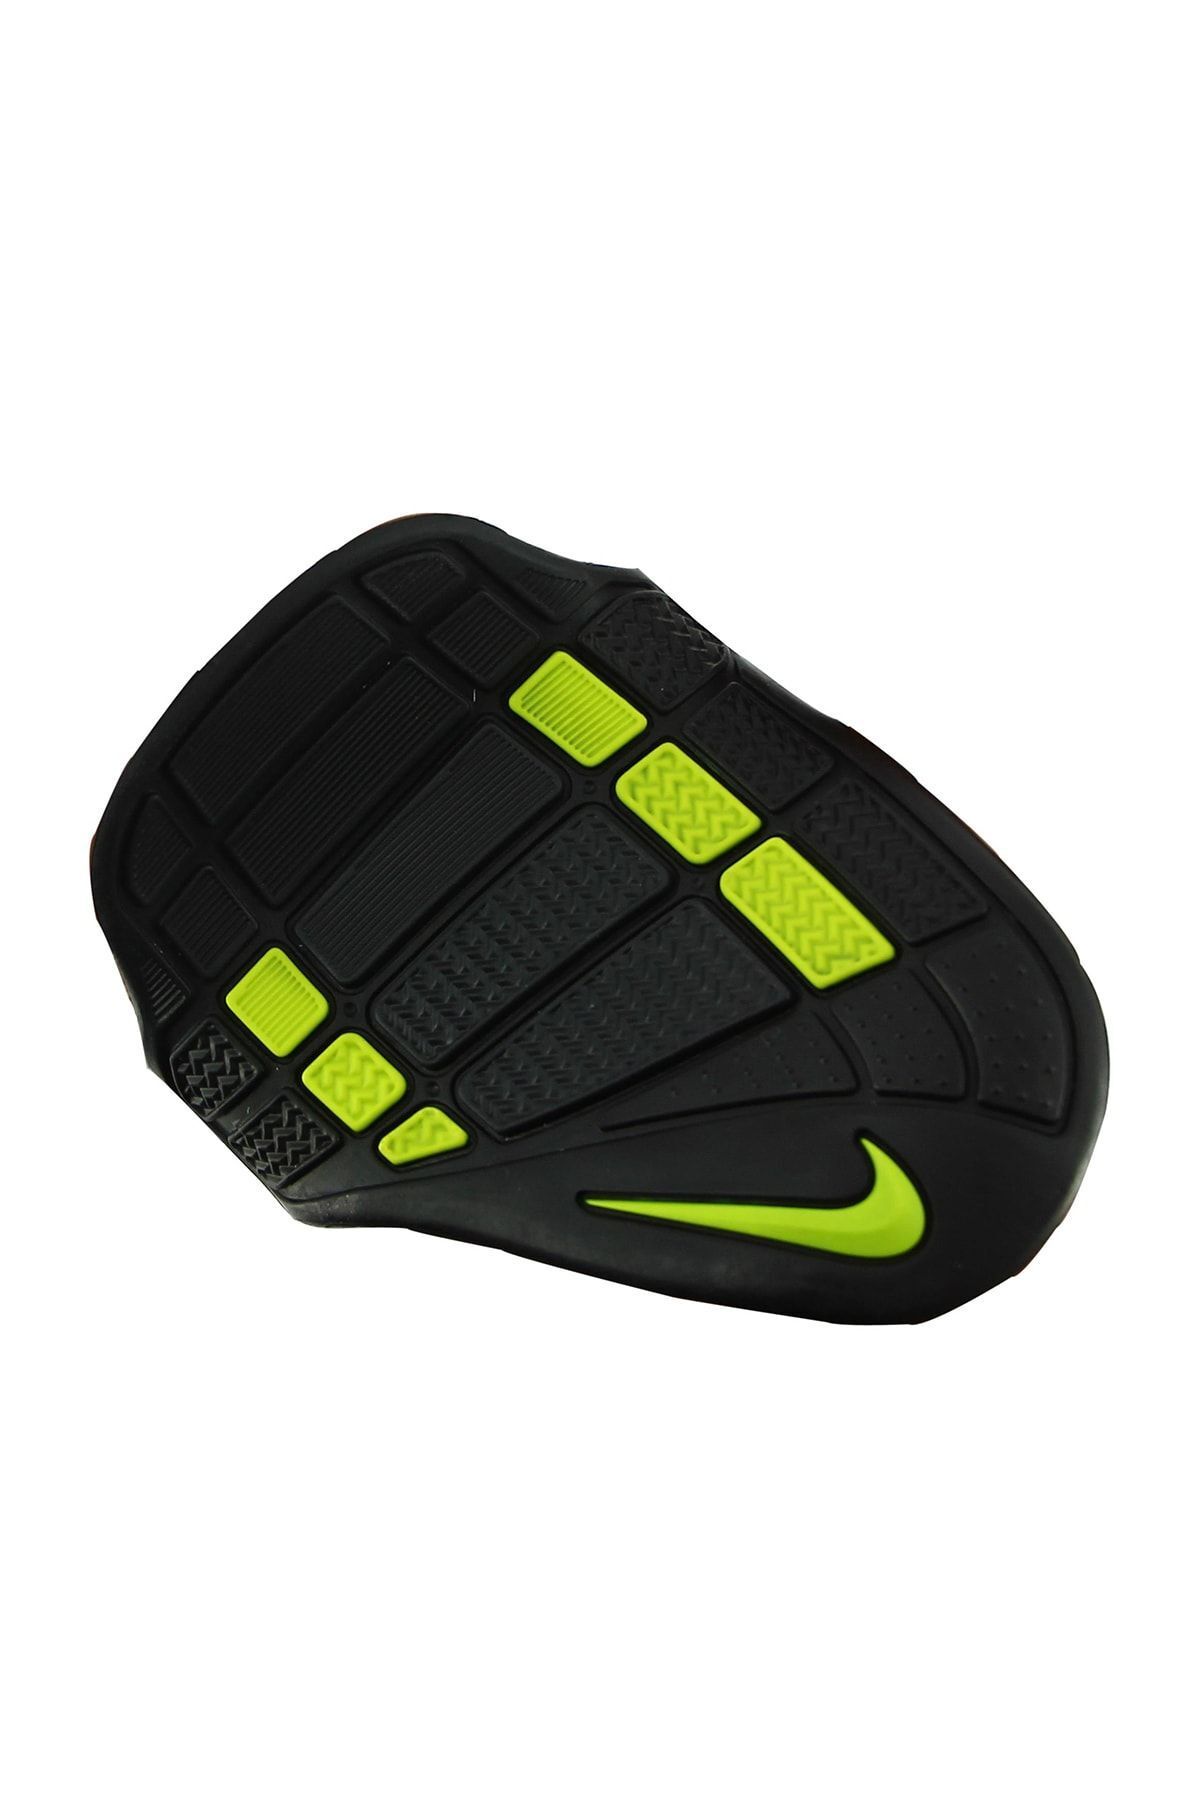 Nike Eldiven Alpha Training Grip - N.LG.66.029.MD